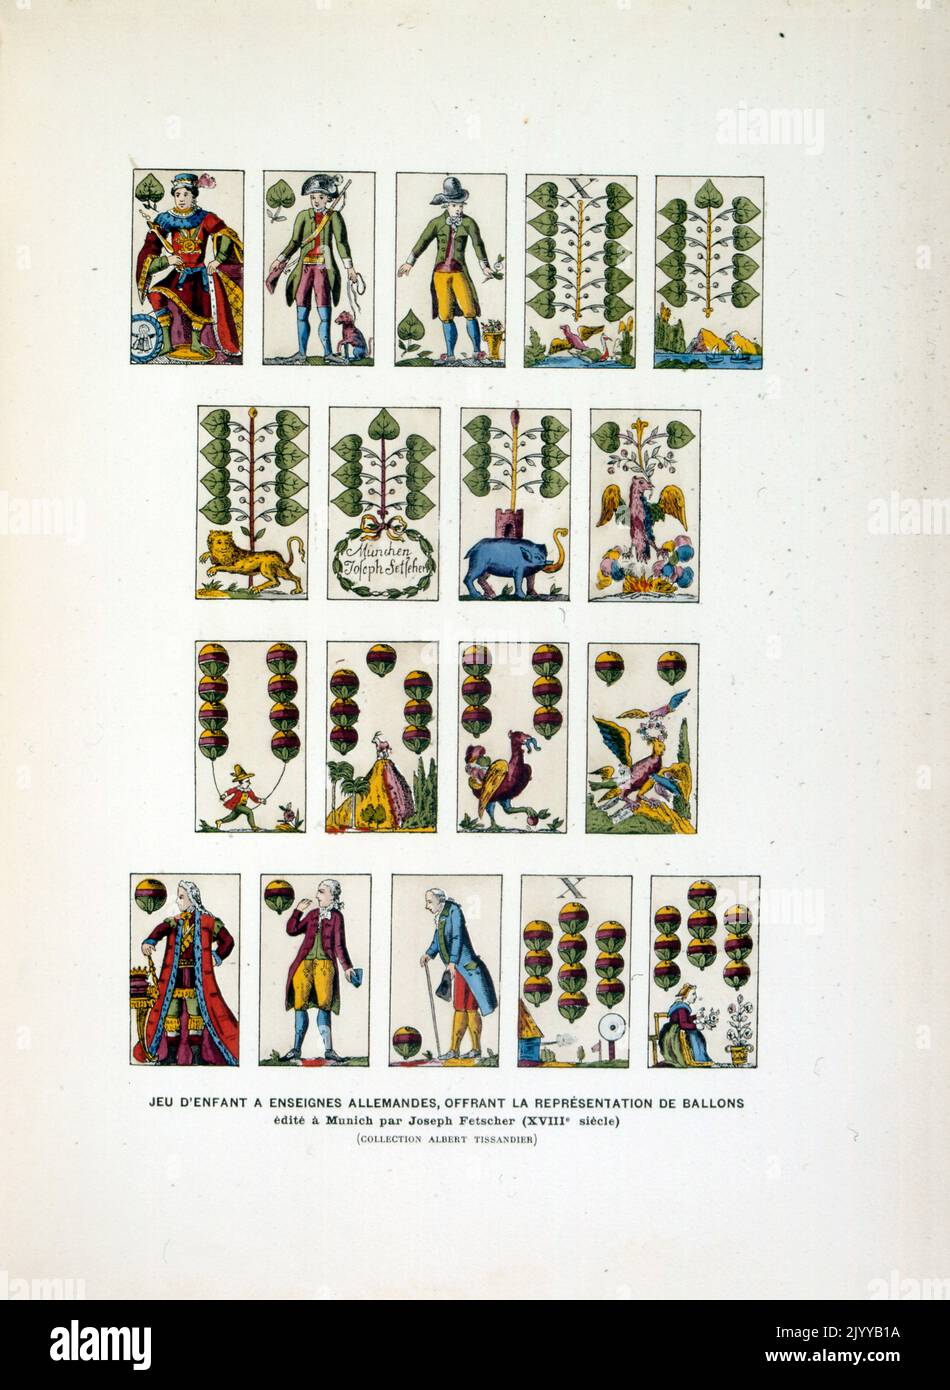 Farbige Illustration von Spielkarten; ein Spiel eines Kindes, um ihm Deutsch zu lehren. Gedruckt bei Joseph Fetscher im 18.. Jahrhundert in München. Stockfoto